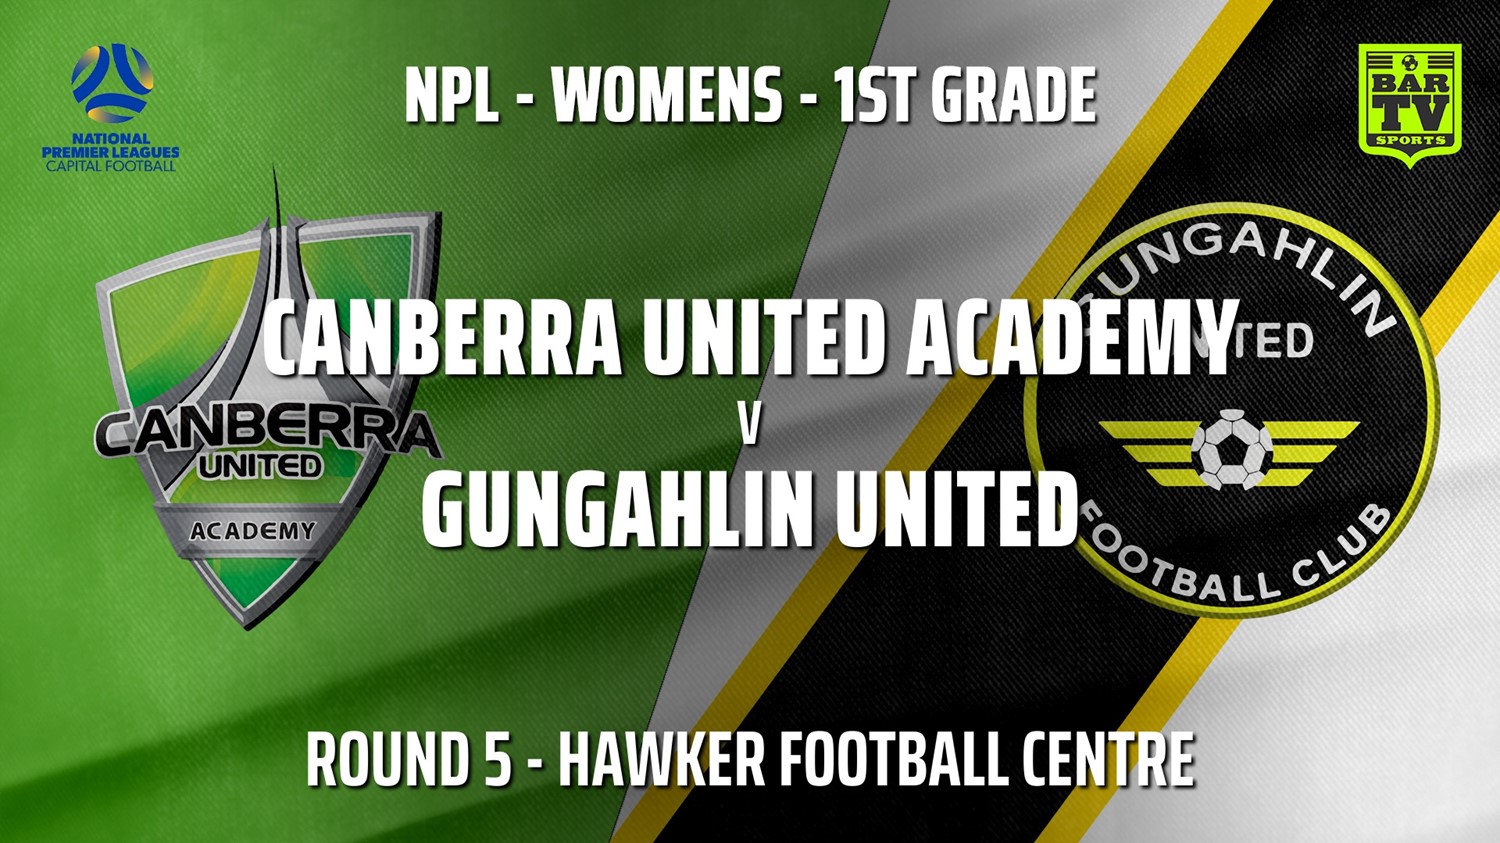 210510-NPLW - Capital Round 5 - Canberra United Academy v Gungahlin United FC (women) Minigame Slate Image